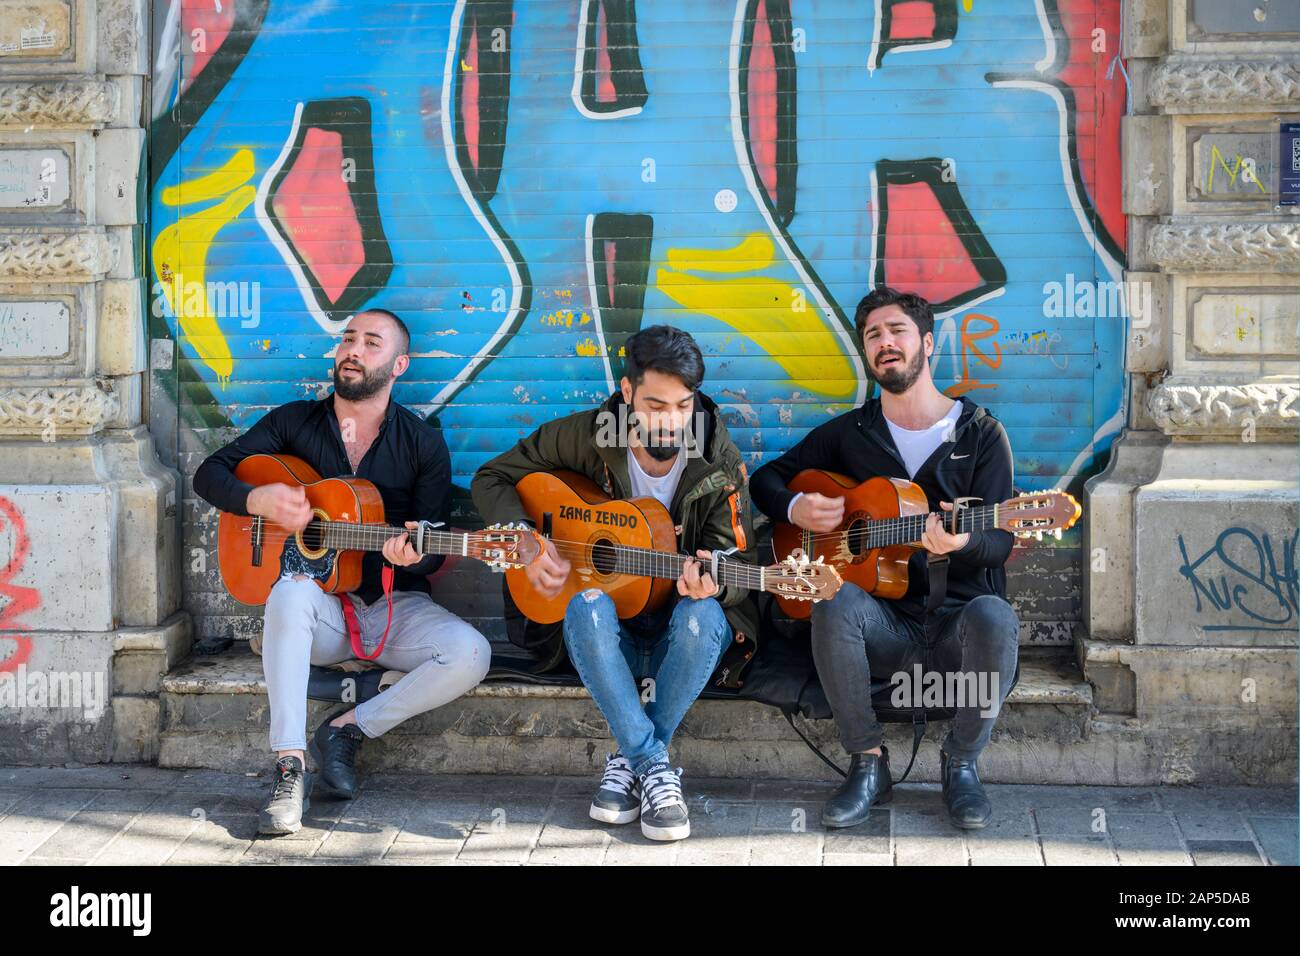 Türkei, Istanbul, Beyoglu, Strassenmusiker in der Istiklal Caddesi (Unabhängigkeitsstrasse). Sie ist eine Fussgüngerzone und ist tagsüber Einkaufsstra Stock Photo